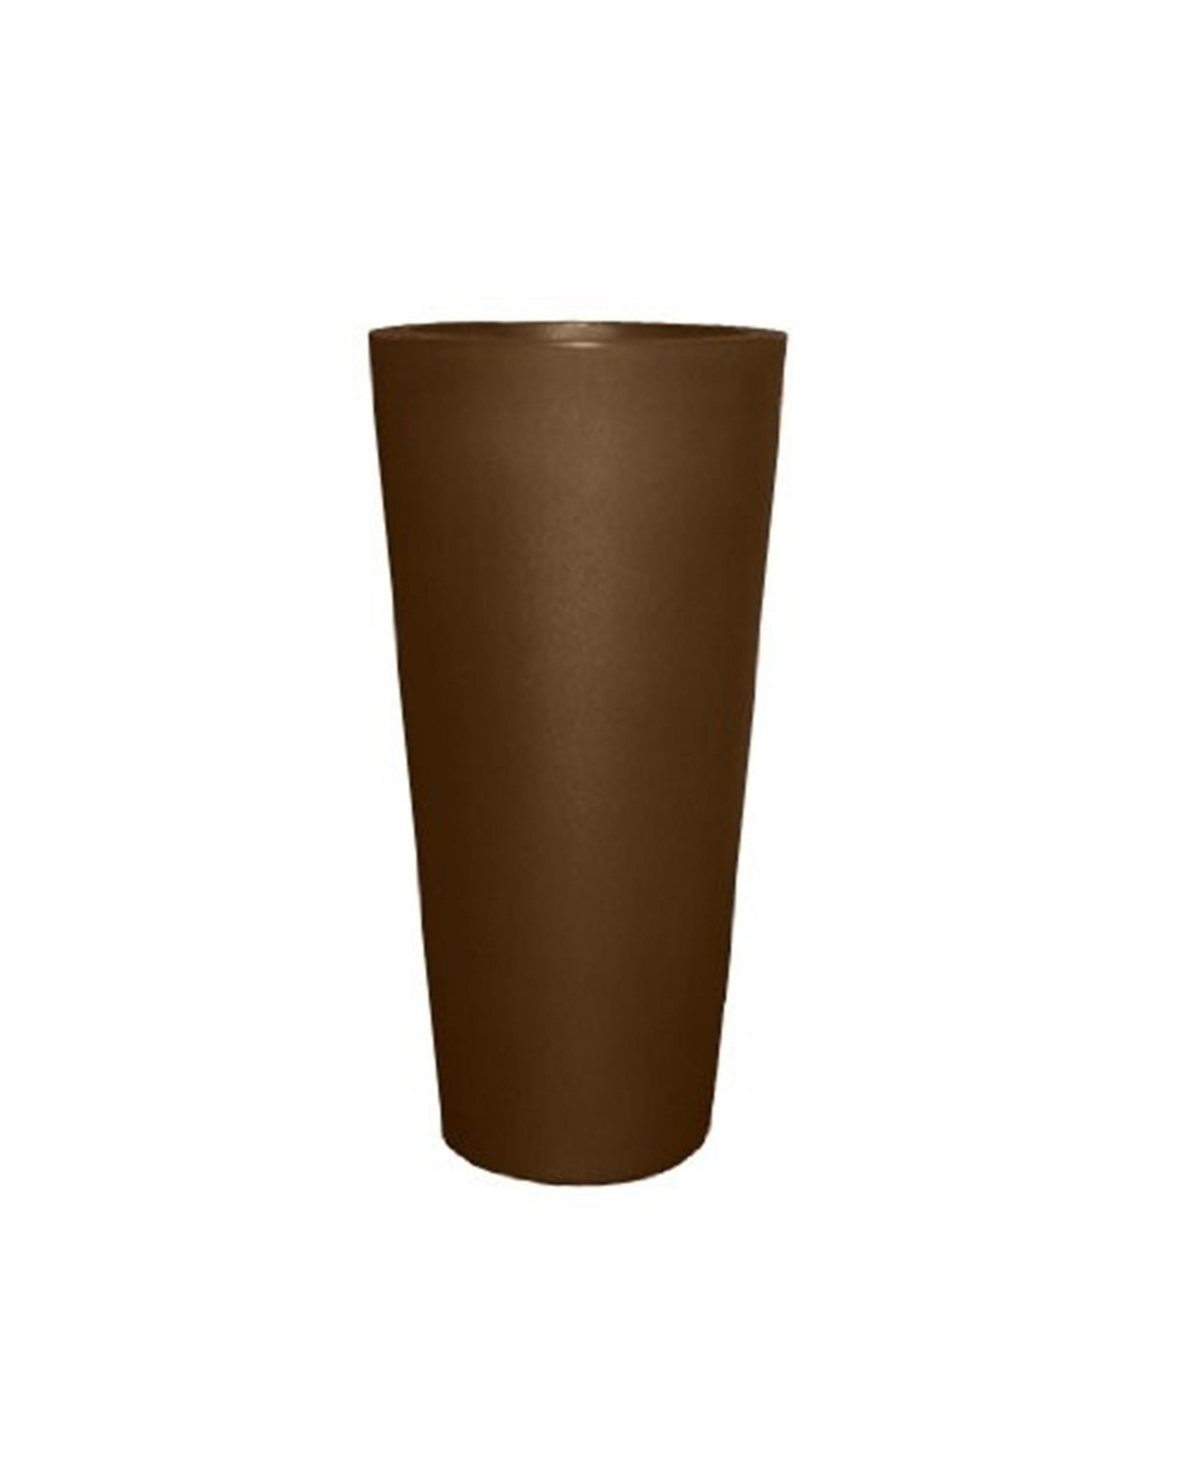 Cosmopolitan Tall Round Plastic Planter Espresso 26" - Brown